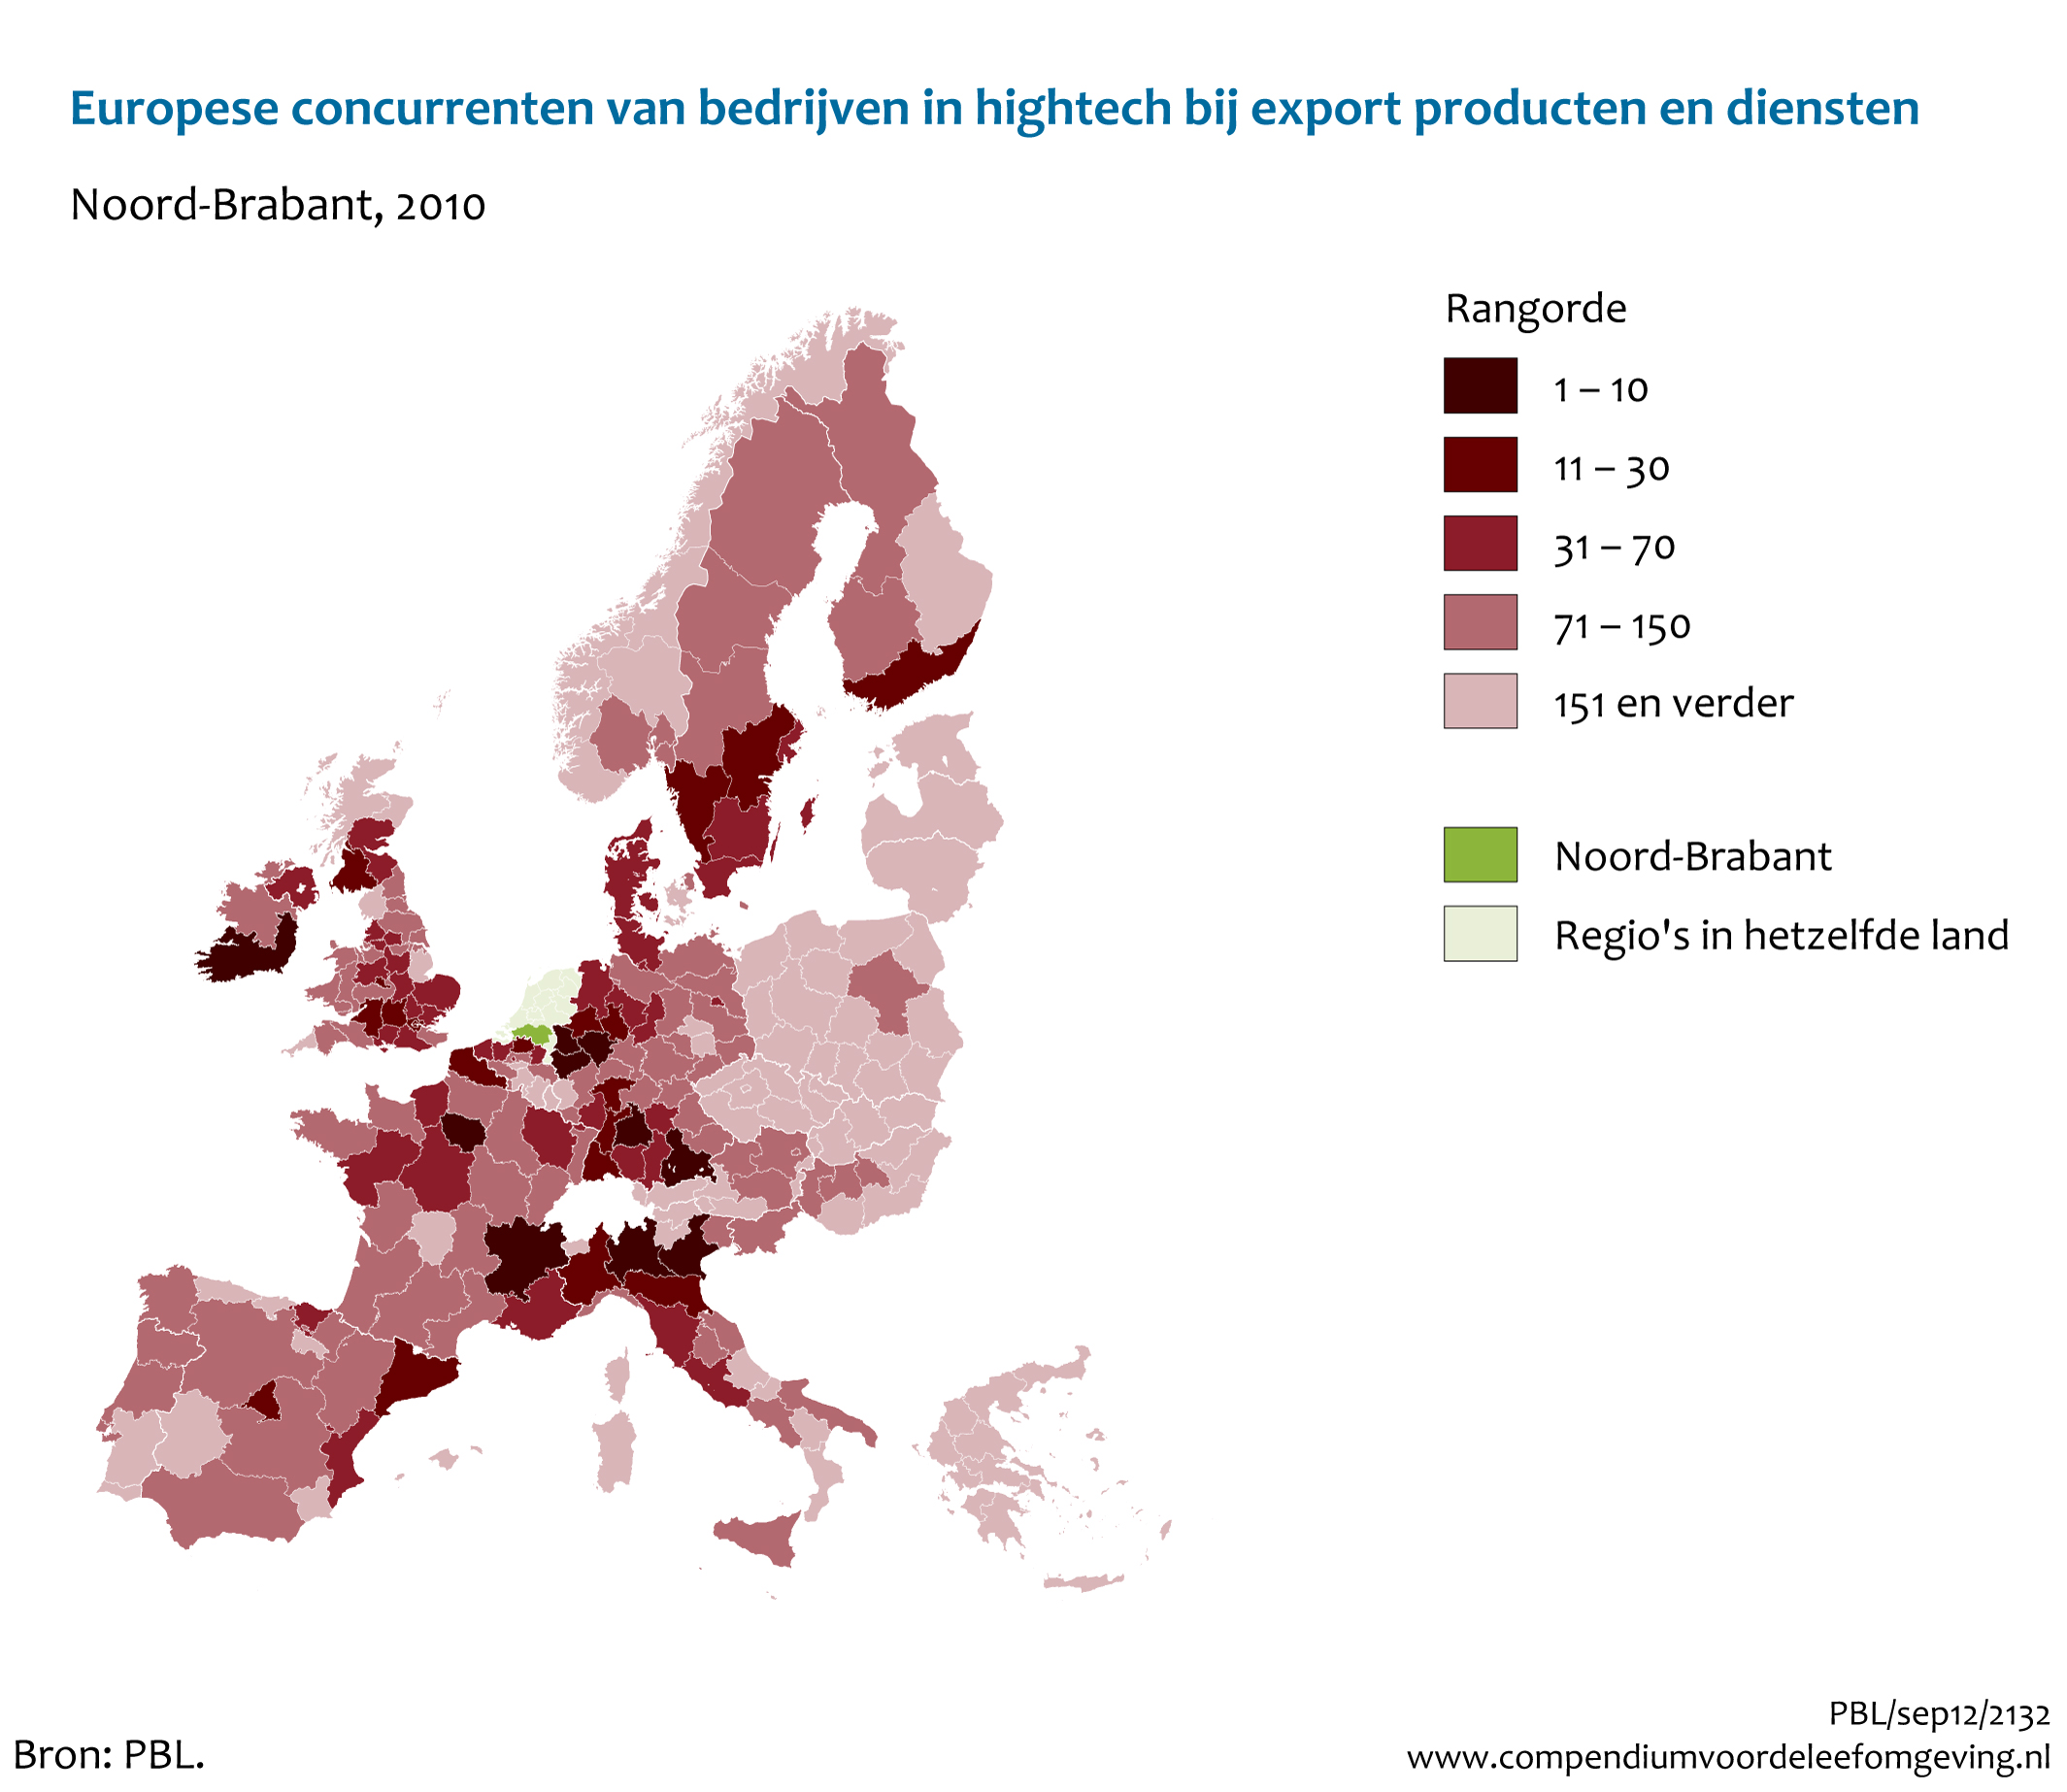 Figuur Europese concurrenten van bedrijven in hightech bij export producten en diensten - Provincie Brabant. In de rest van de tekst wordt deze figuur uitgebreider uitgelegd.